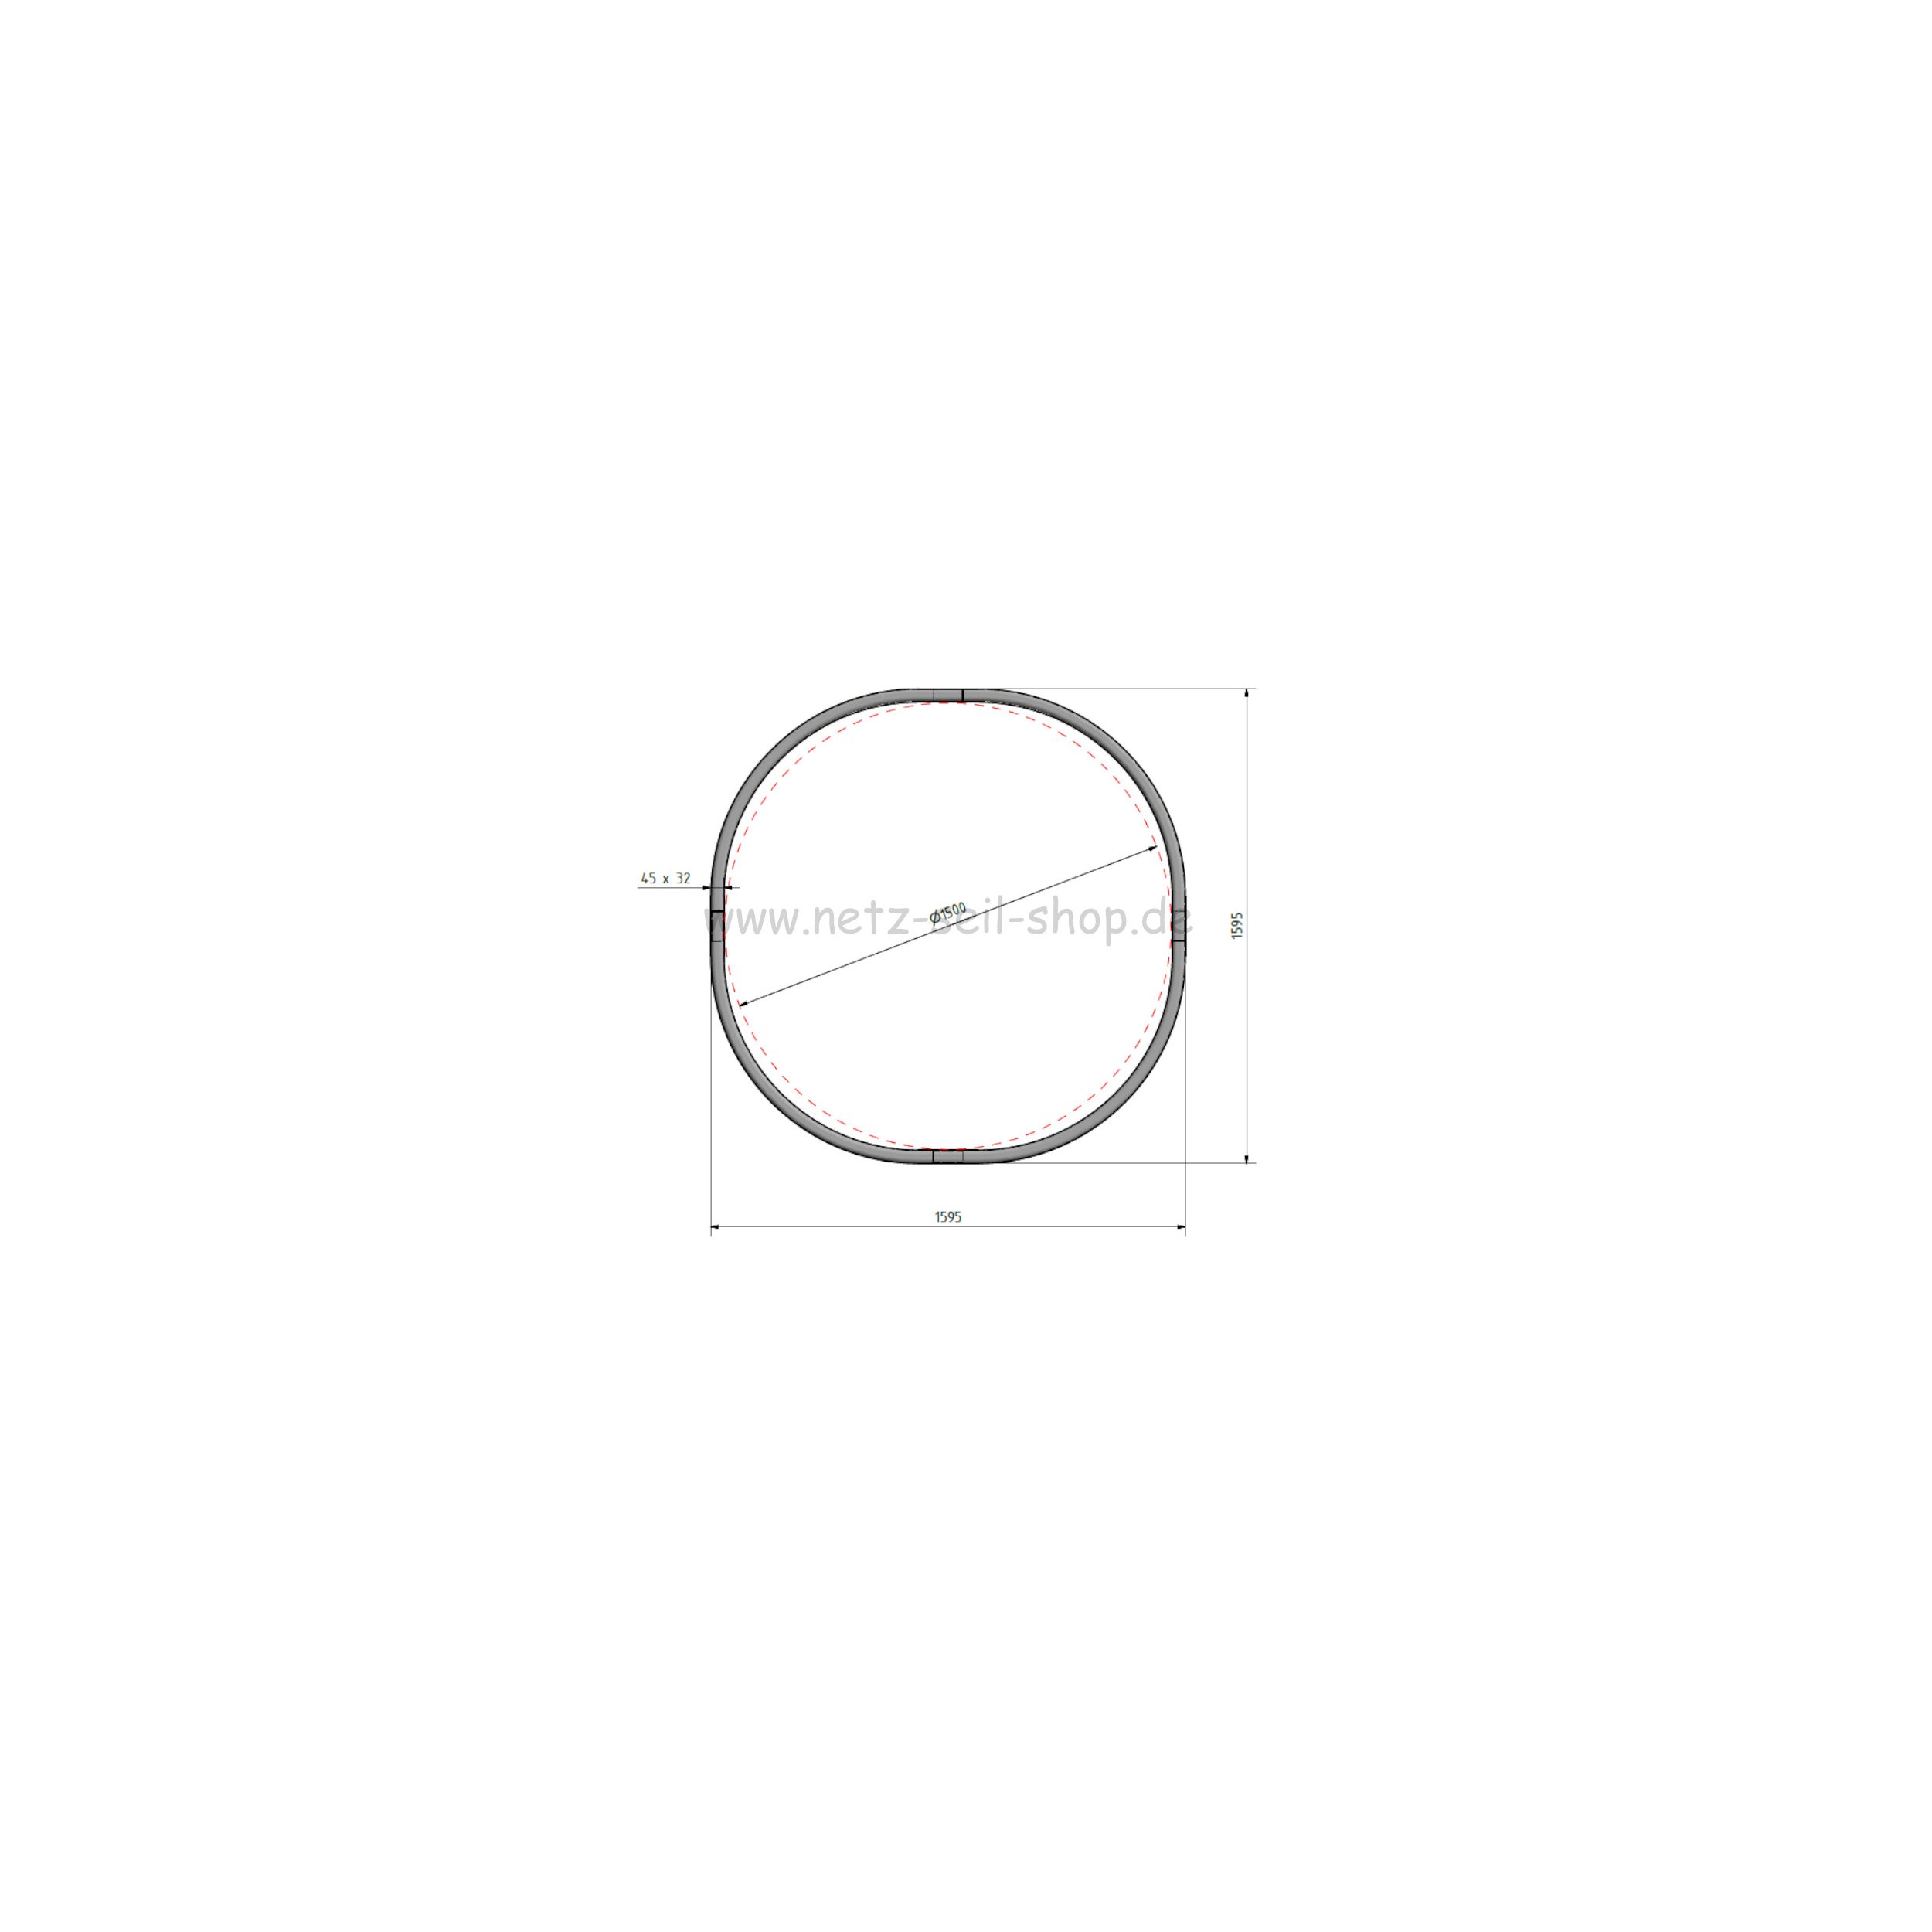 Kopie von Heunetz für Rundballen, 160 cm Durchmesser, Höhe 120cm,  Ø 5 mm Garn, # 80 mm Maschenweite mit PE Ring inkl. Sand für Ringbefüllung